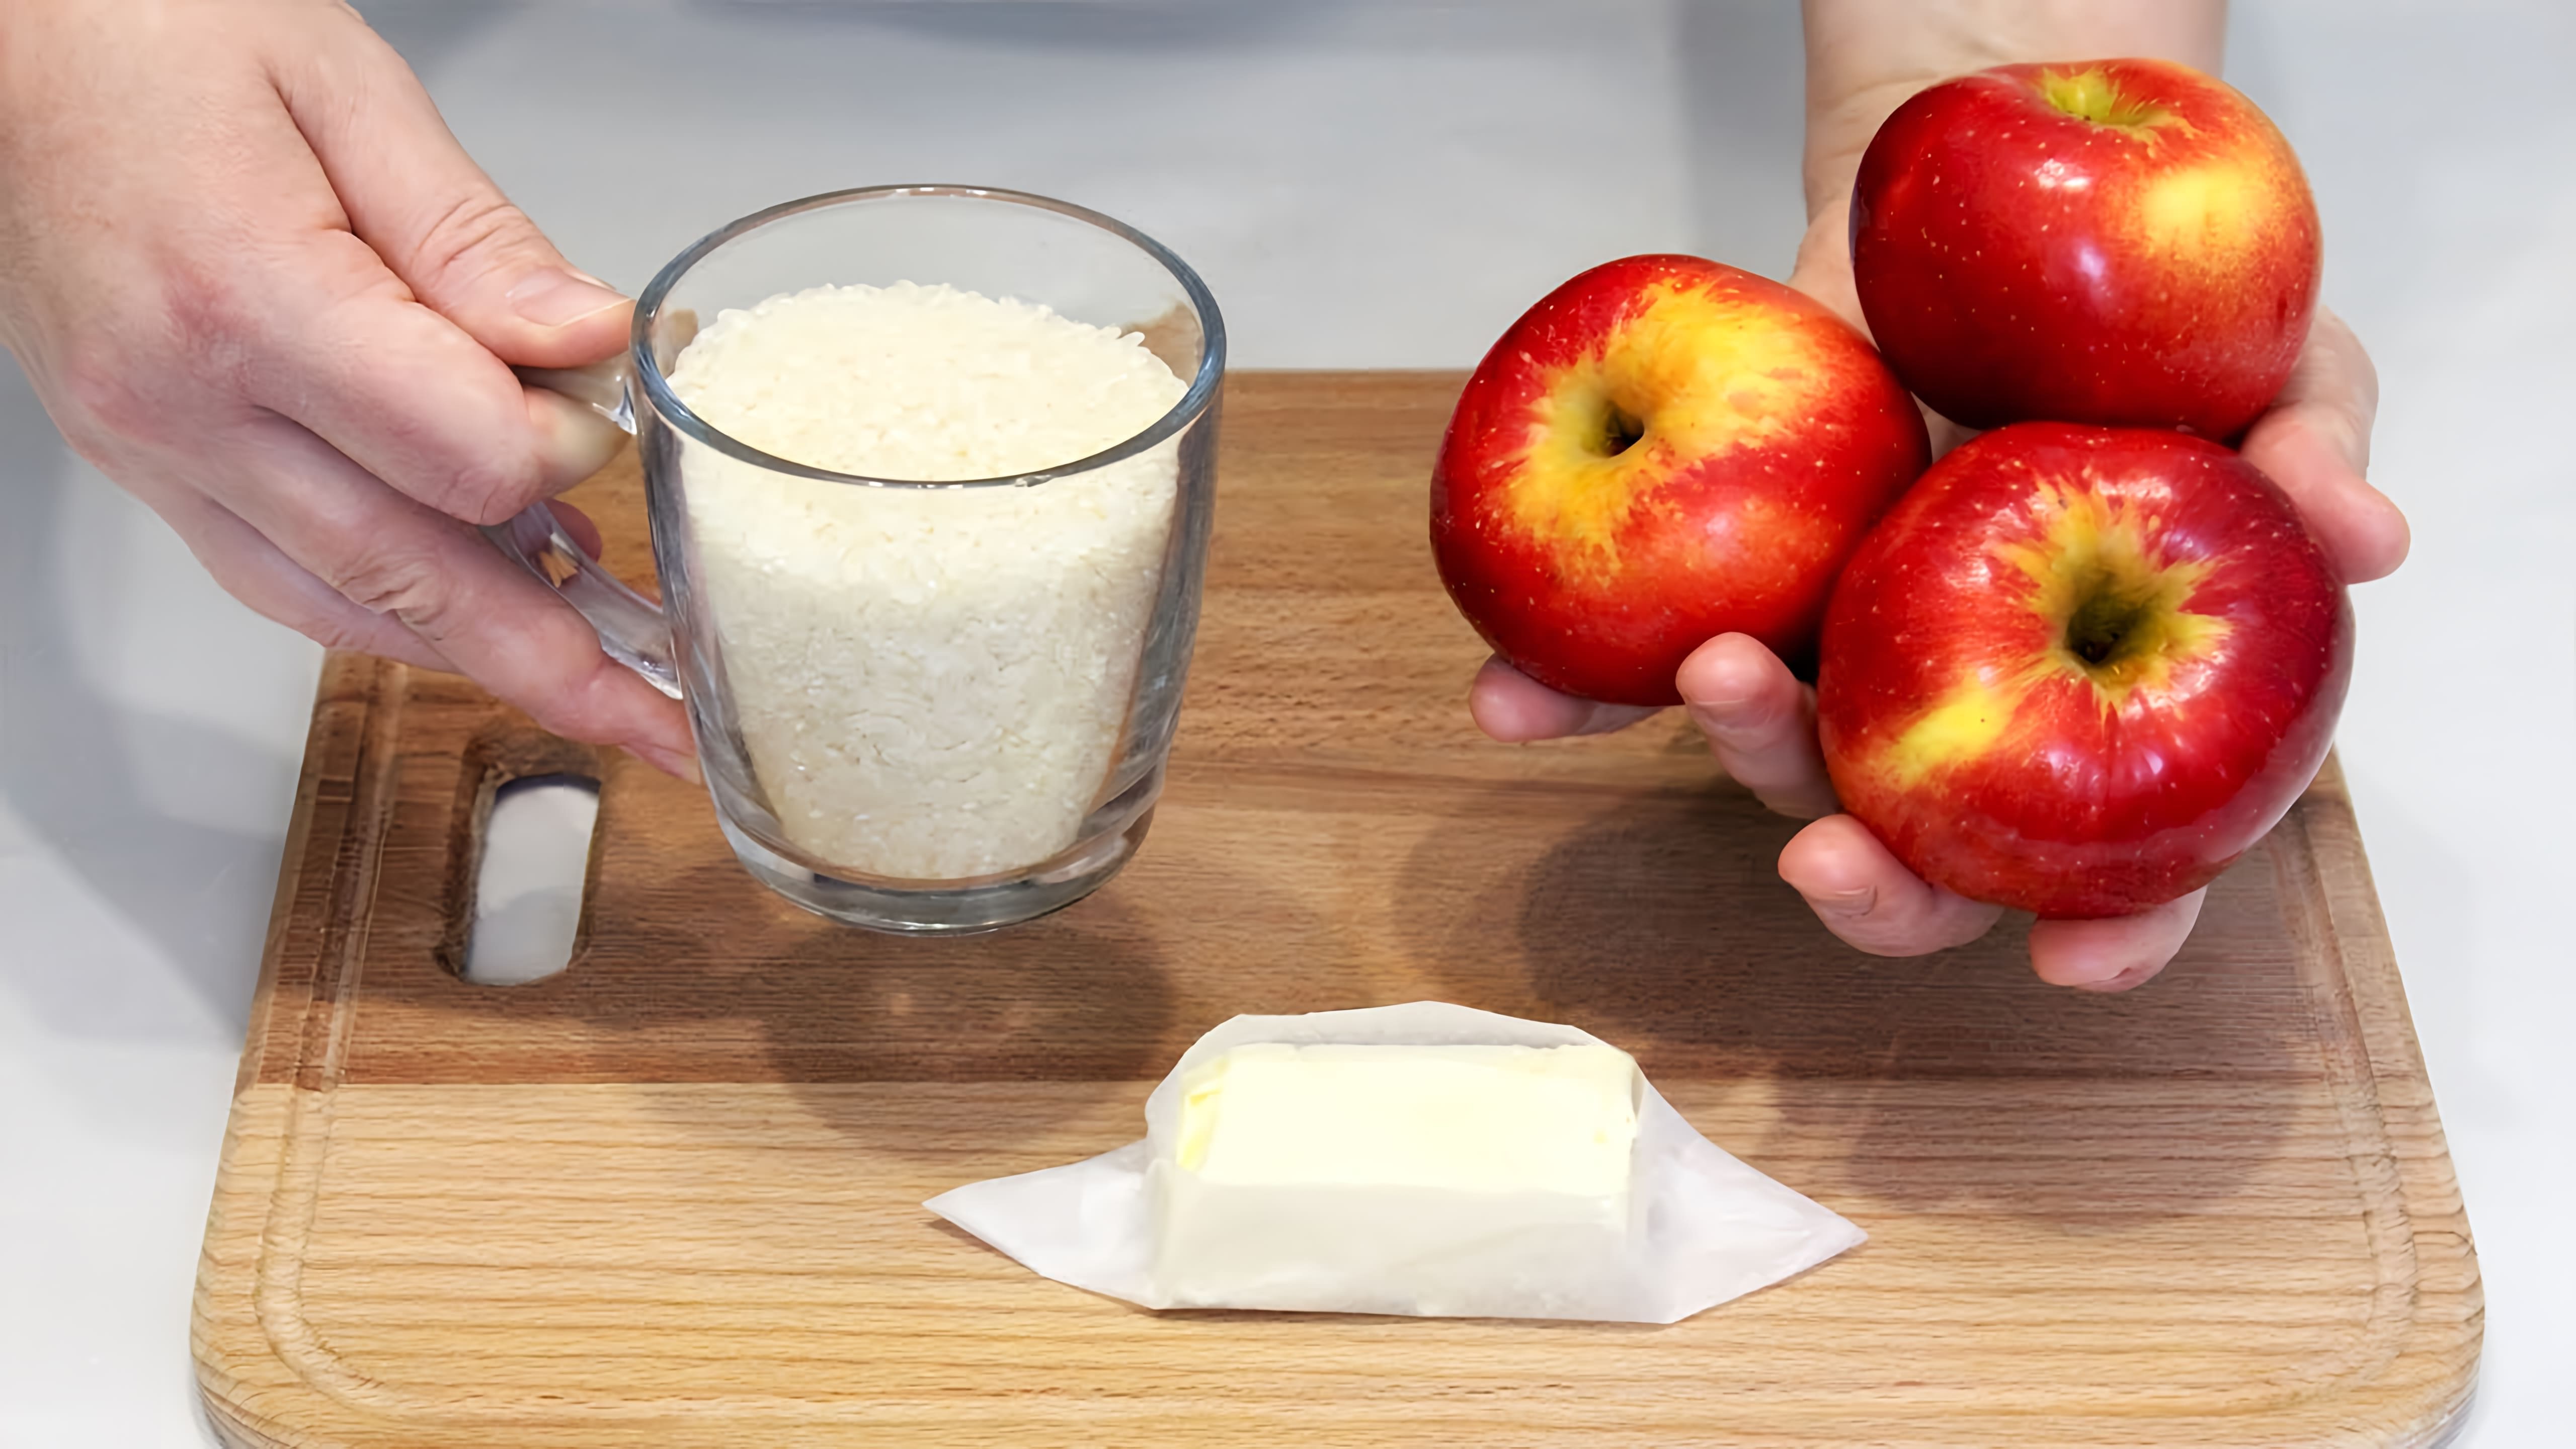 В этом видео демонстрируется рецепт приготовления рисовой каши с яблоками без молока